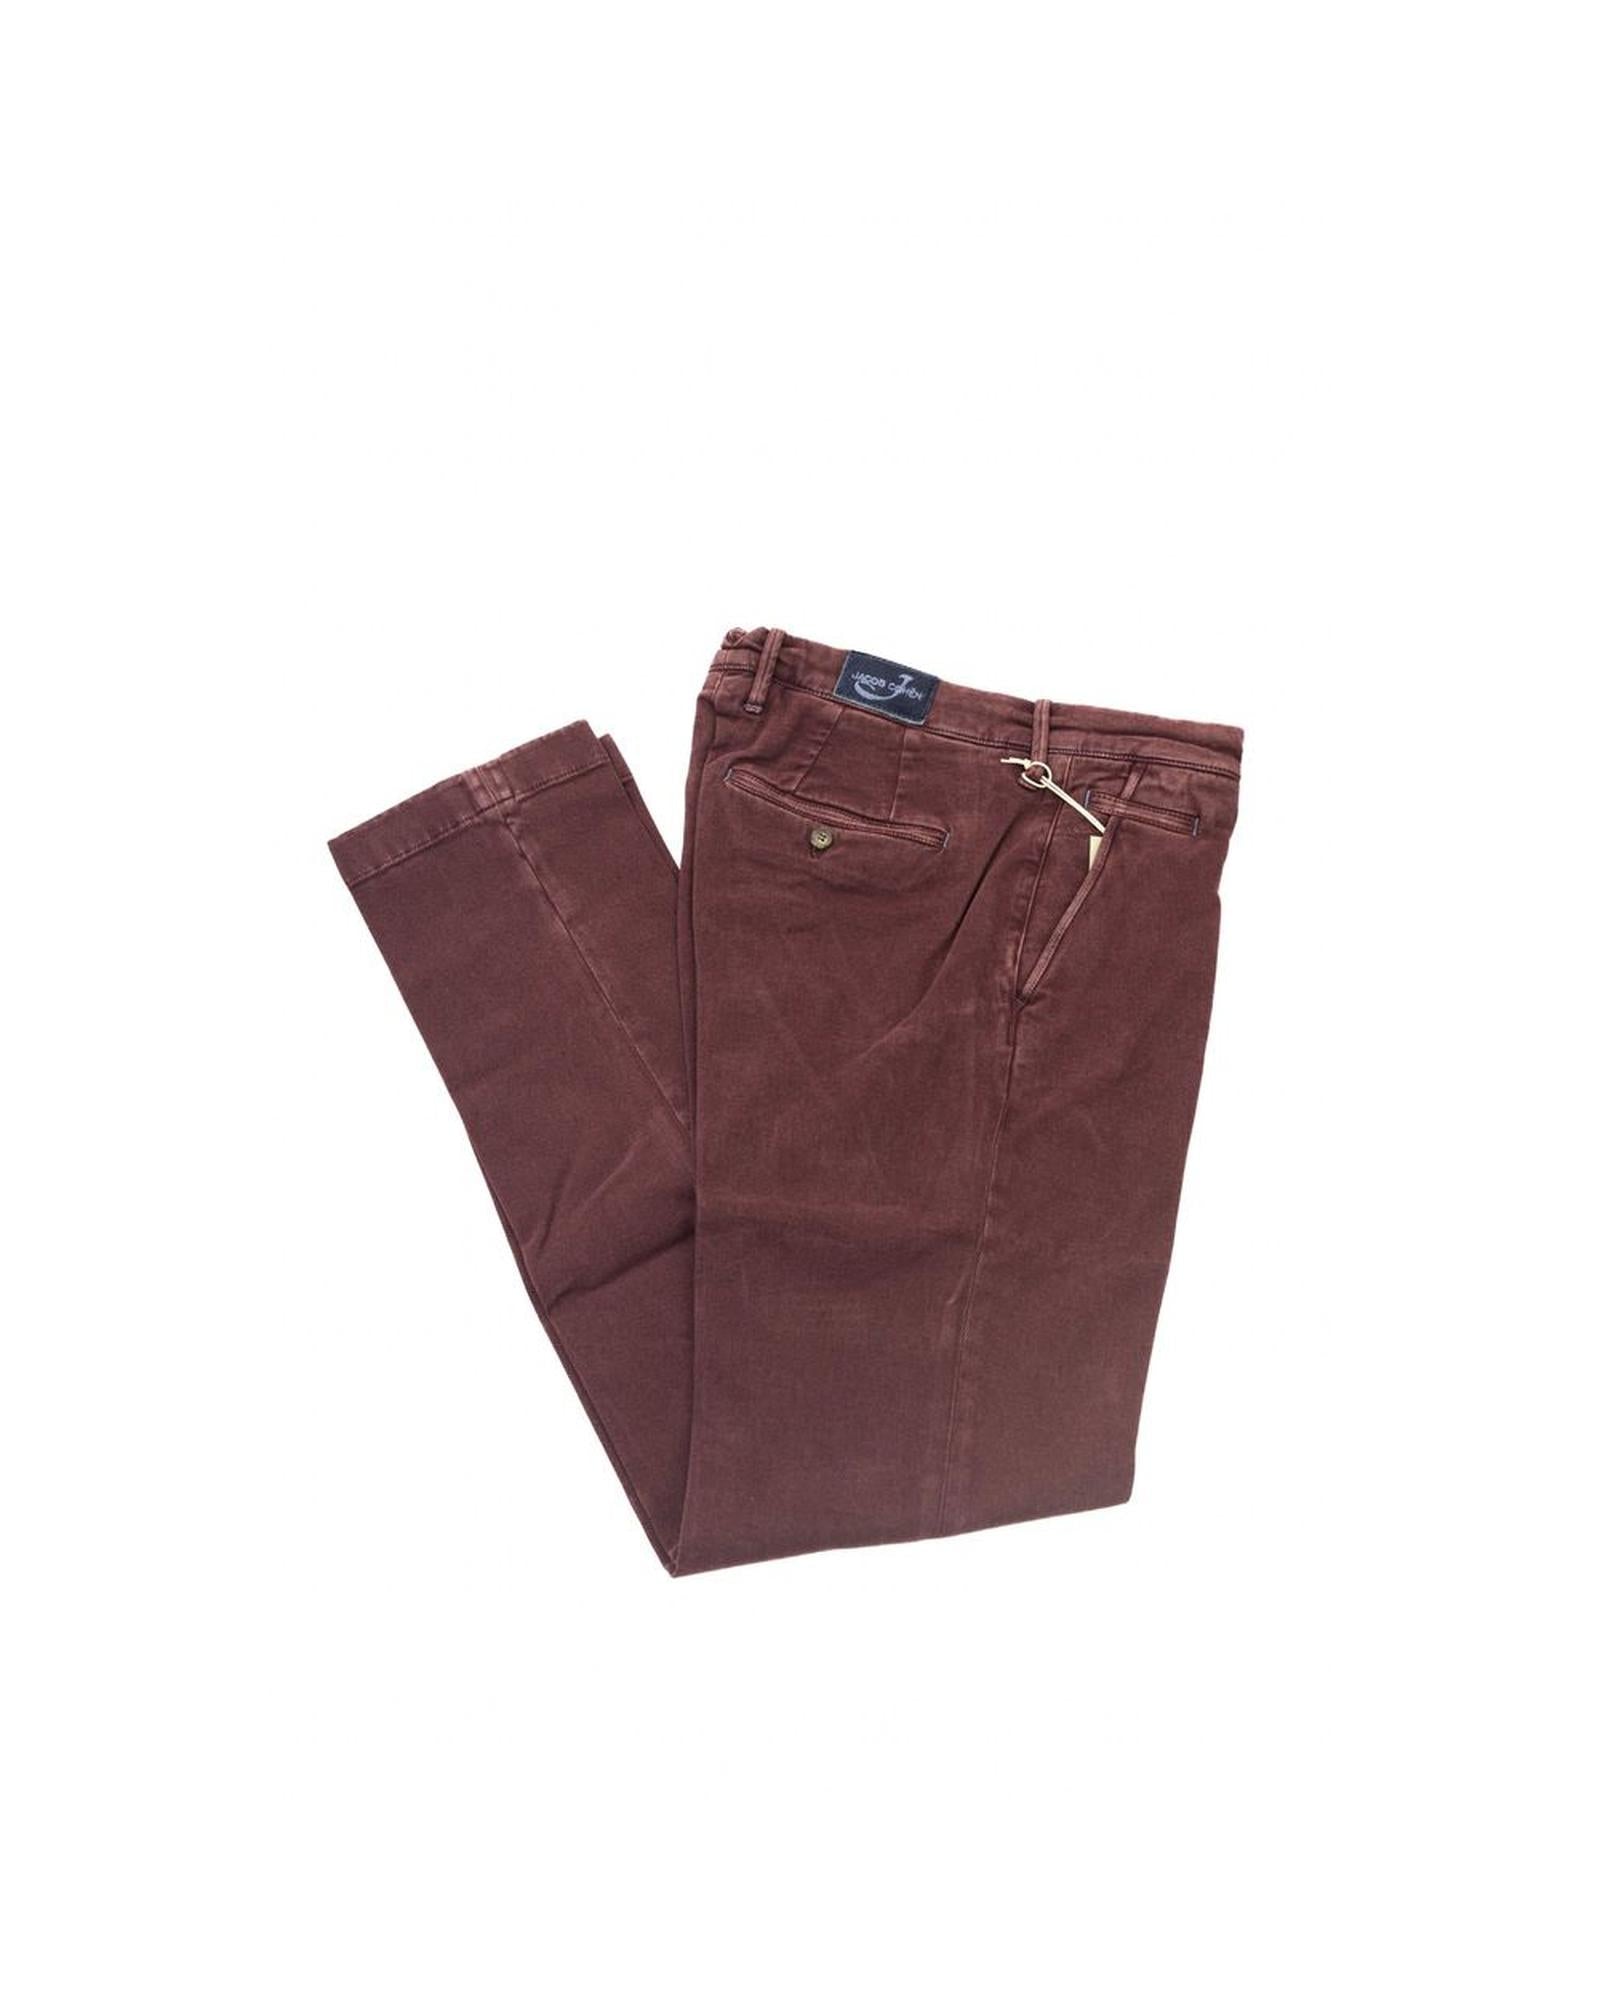 Men's Burgundy Cotton Jeans & Pant - W32 US